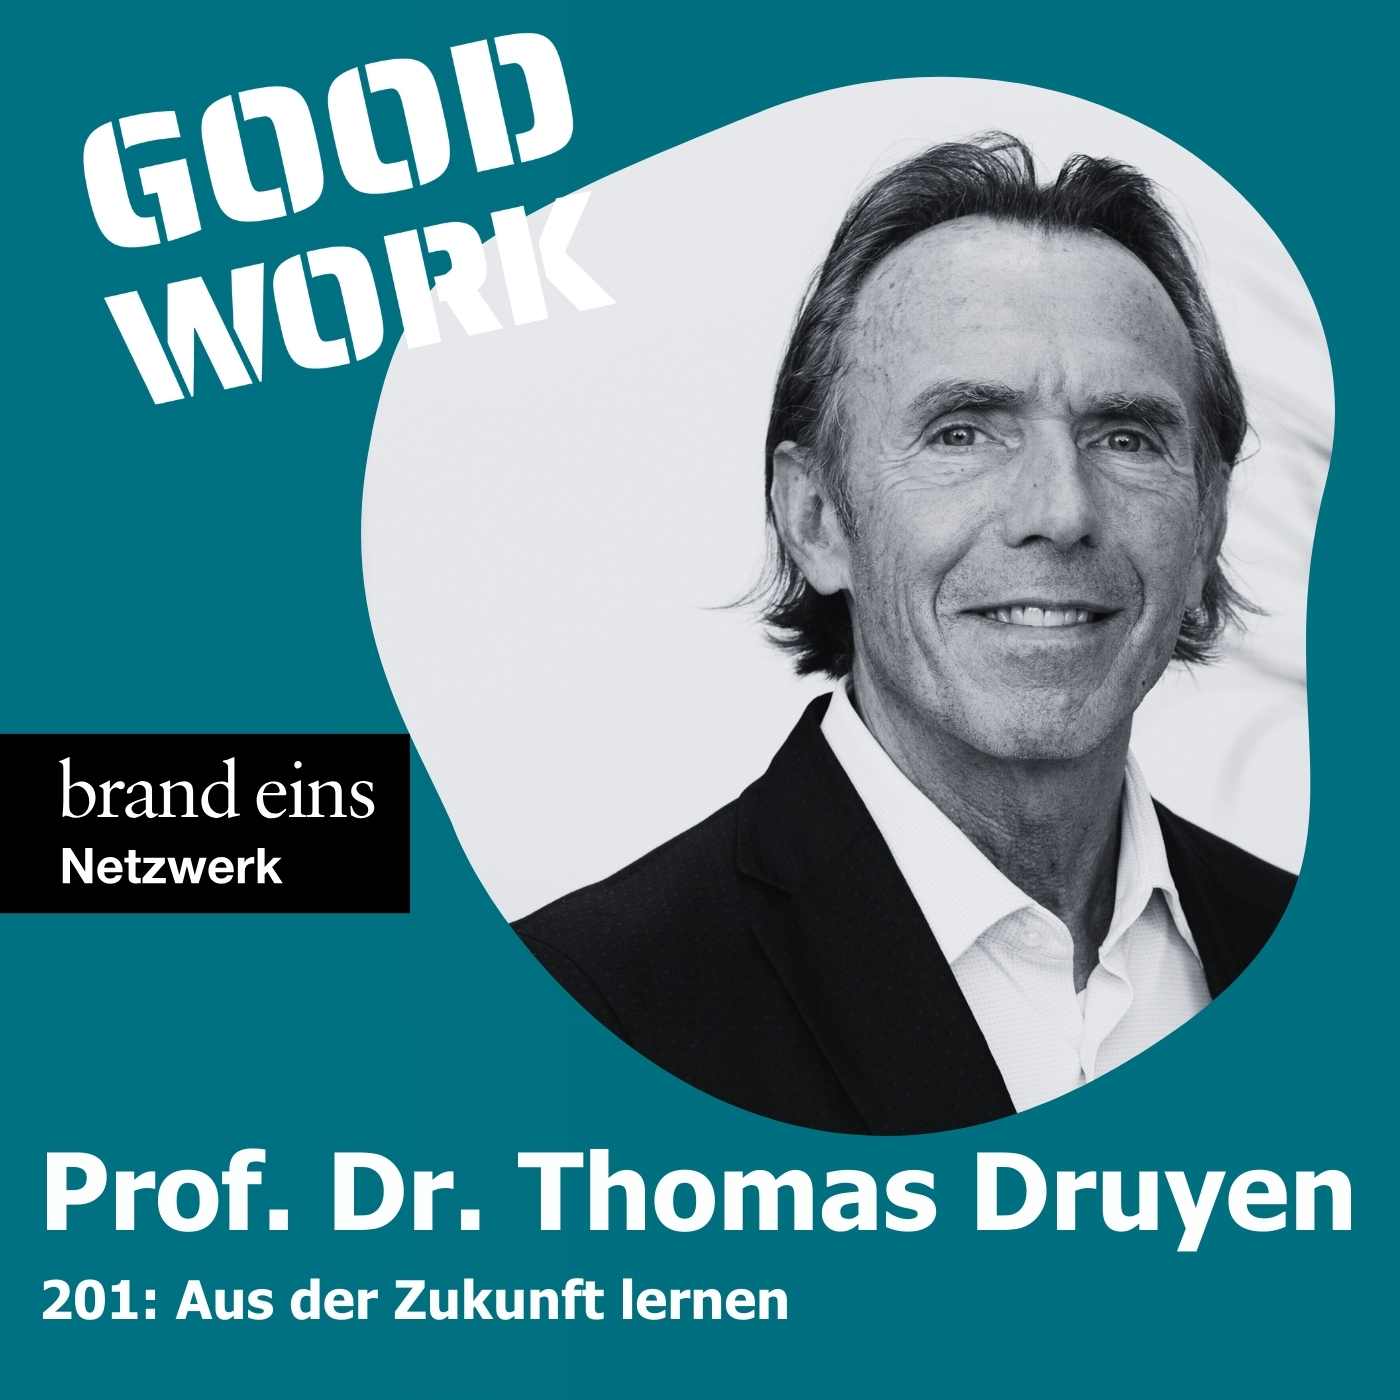 #201: "Zukunftspsychologie heisst, aus der Zukunft zu lernen" mit Zukunftsforscher Prof. Dr. Thomas Druyen